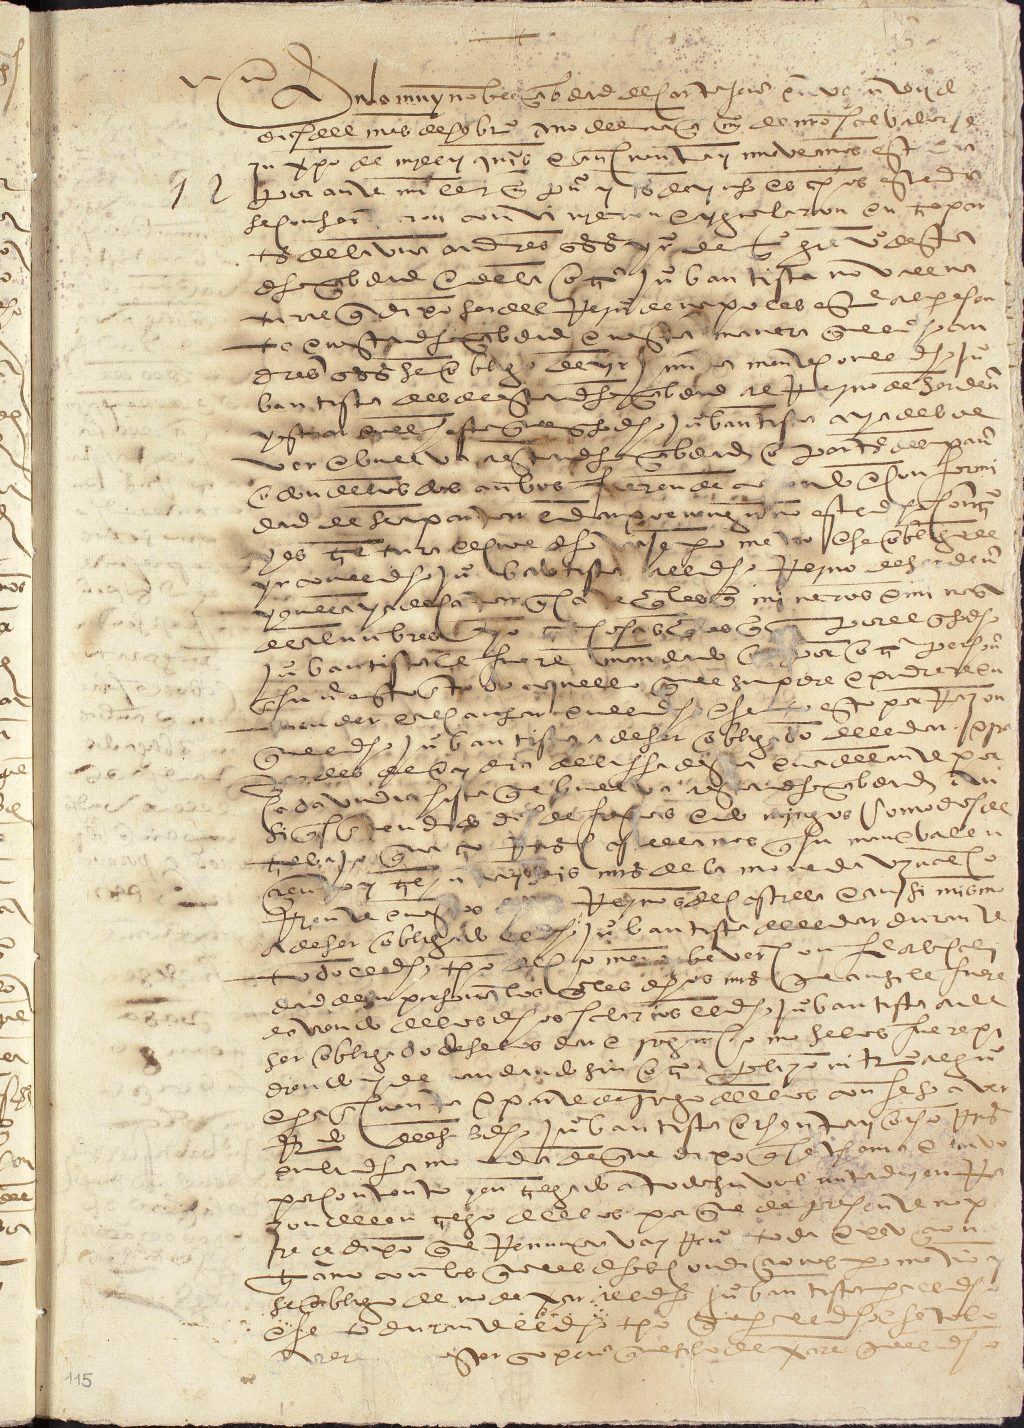 Acuerdo de Andrés González, vecino de Cartagena, con Juan Bautista Novall, natural del reino de Nápoles, para acompañarlo al reino de Cerdeña.